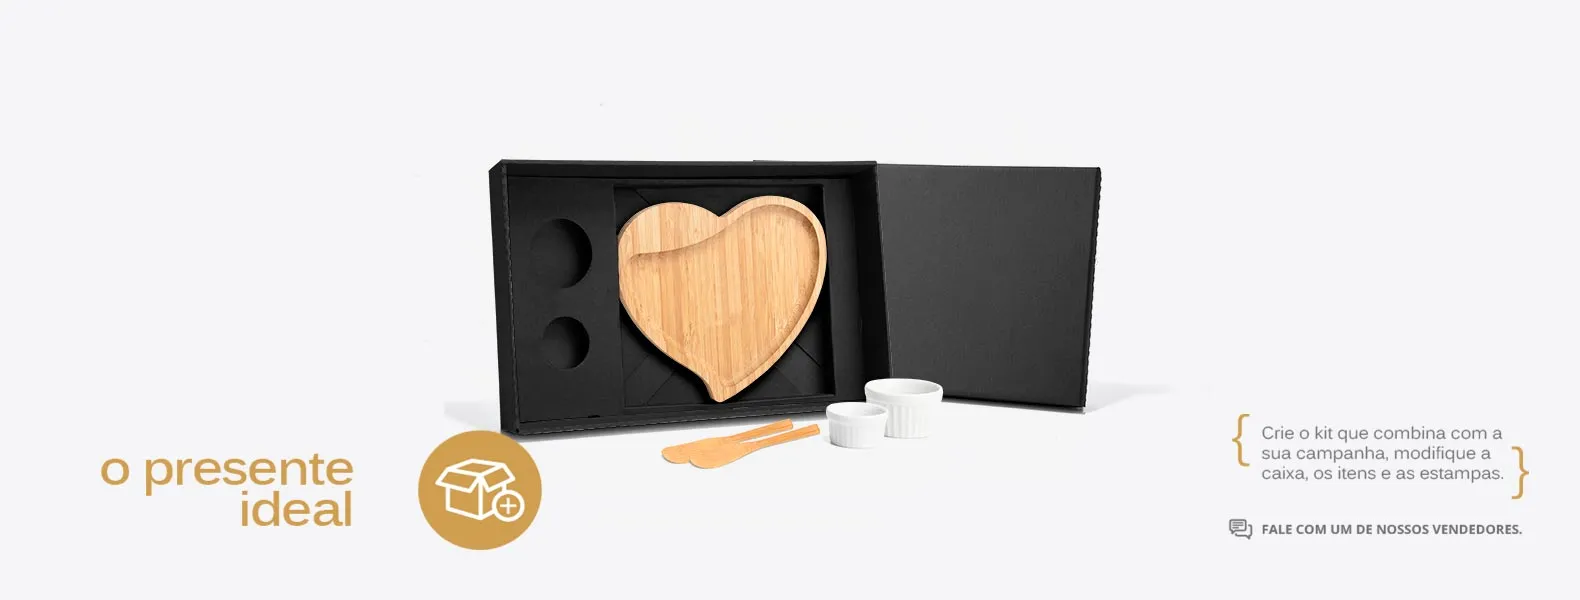 Kit para petisco com petisqueira em formato de coração e duas espátulas 14cm em bambu; Dois ramekins, um pequeno e um mini em porcelana. Estão perfeitamente acomodados em uma caixa para presentear.